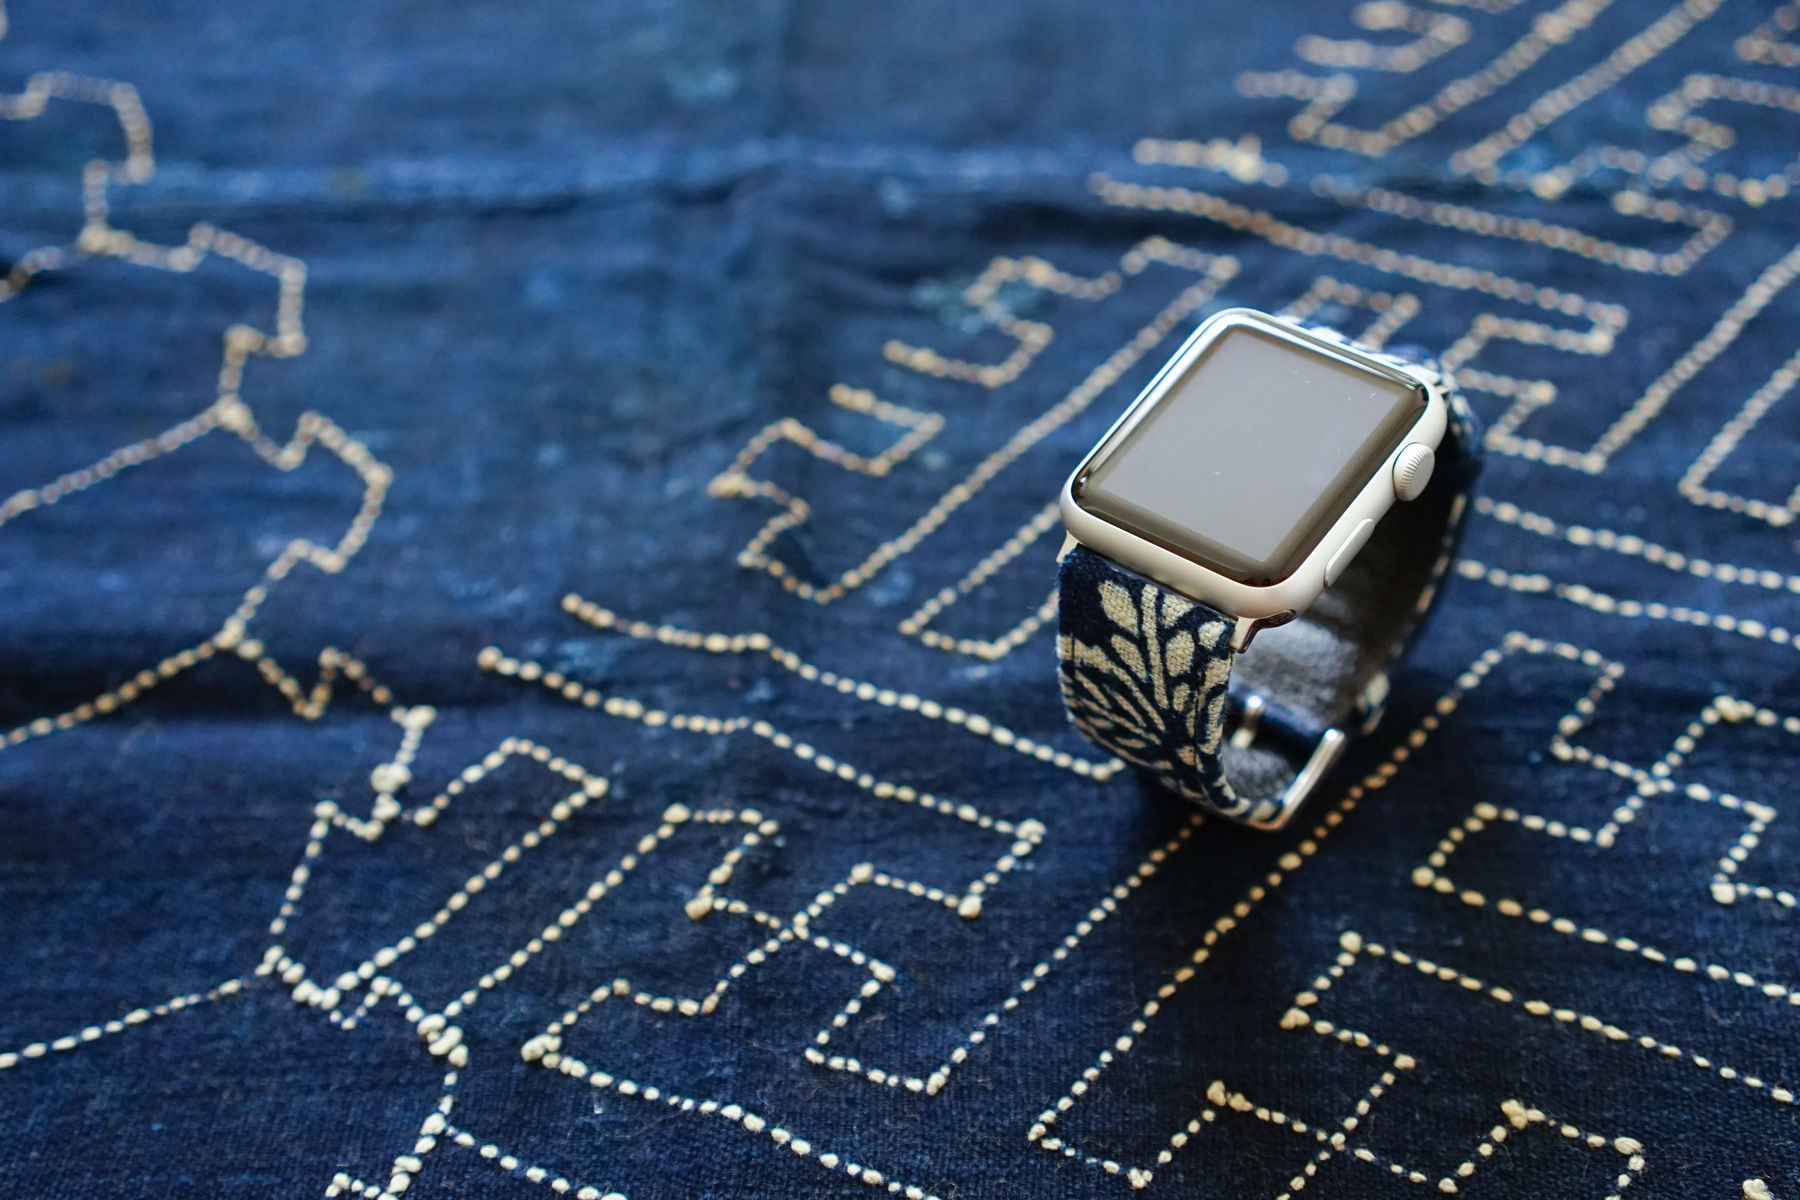 Simple Union 以日本古布定製全新錶帶系列